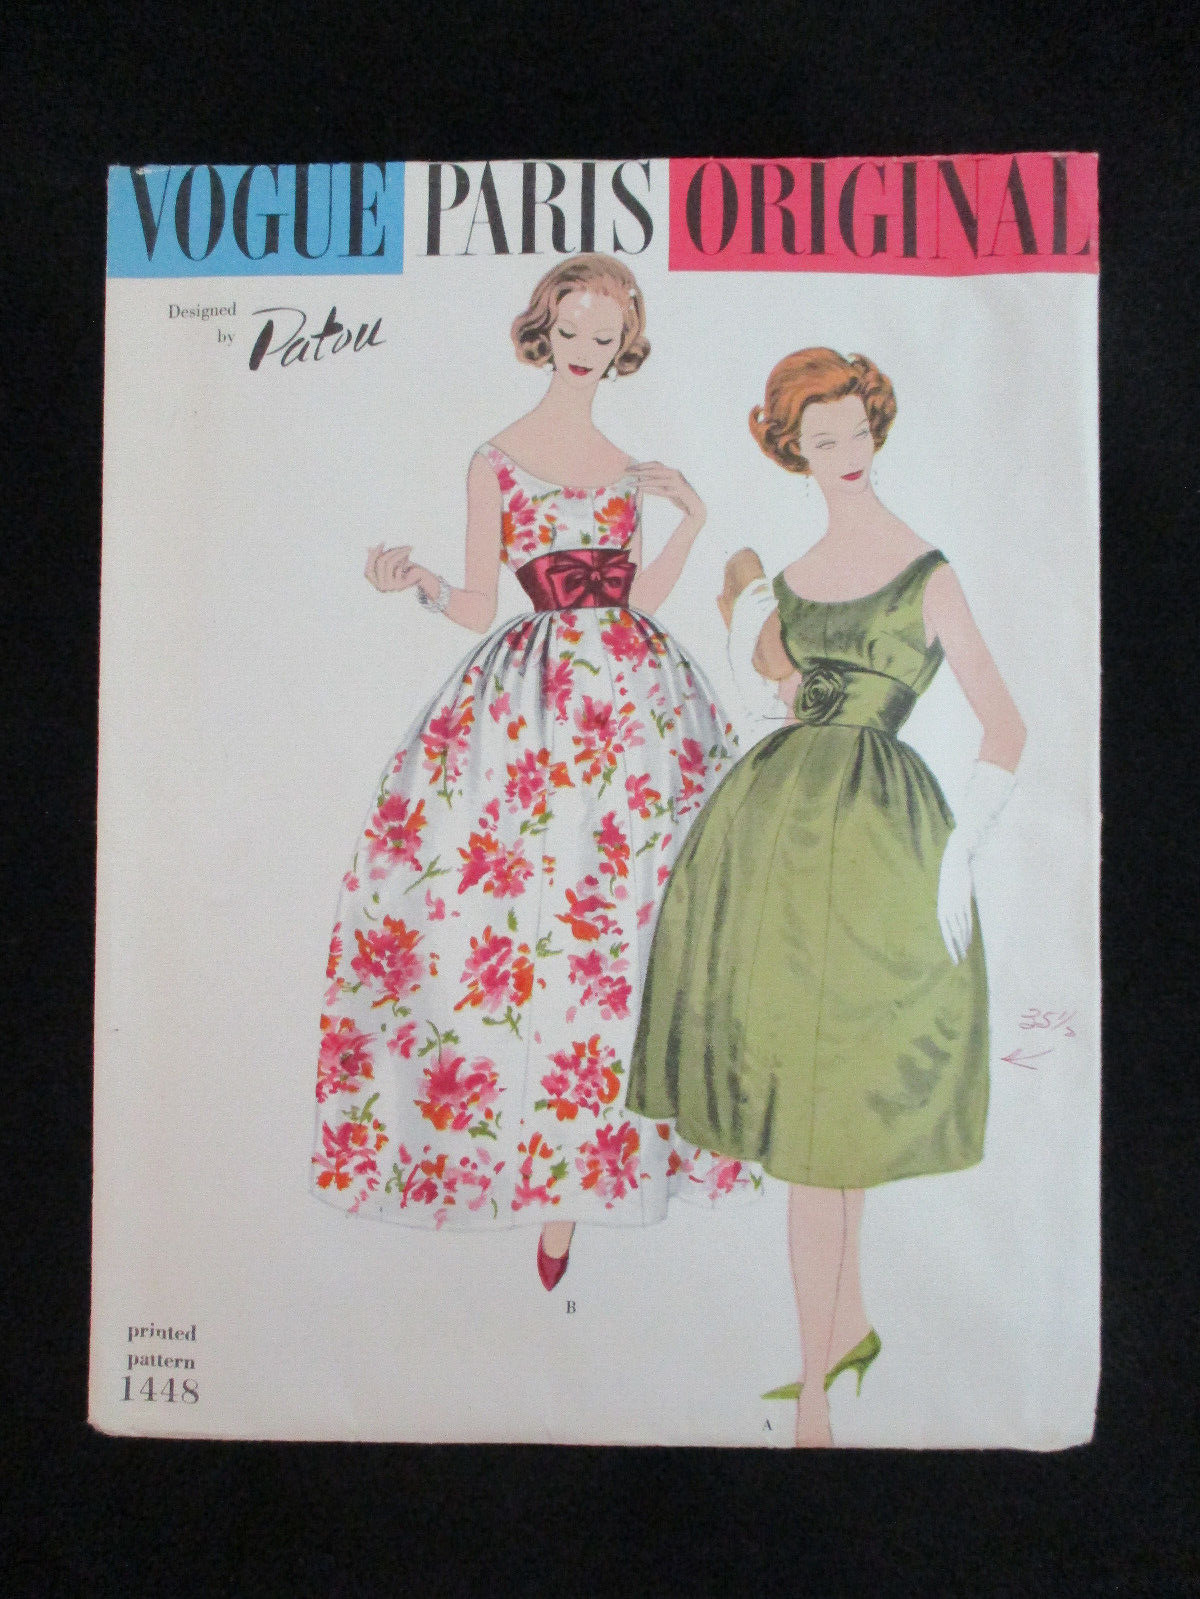 1959 Vintage Vogue Paris Original 1448 Designed by Patou Dress Size 12